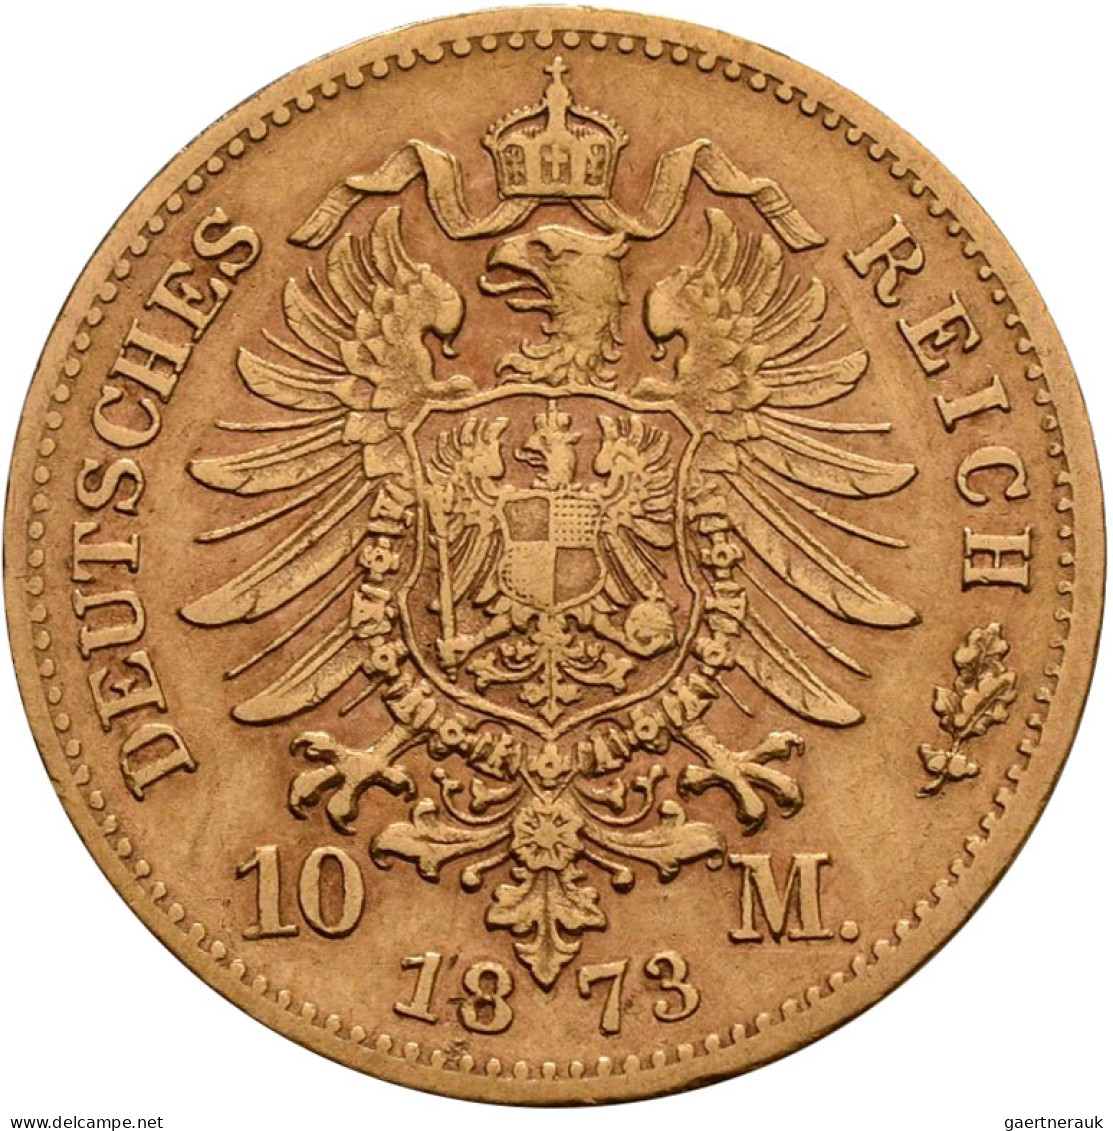 Sachsen - Anlagegold: Johann 1854-1873: 10 Mark 1873 E, Jaeger 257. 3,93 G, 900/ - 5, 10 & 20 Mark Gold